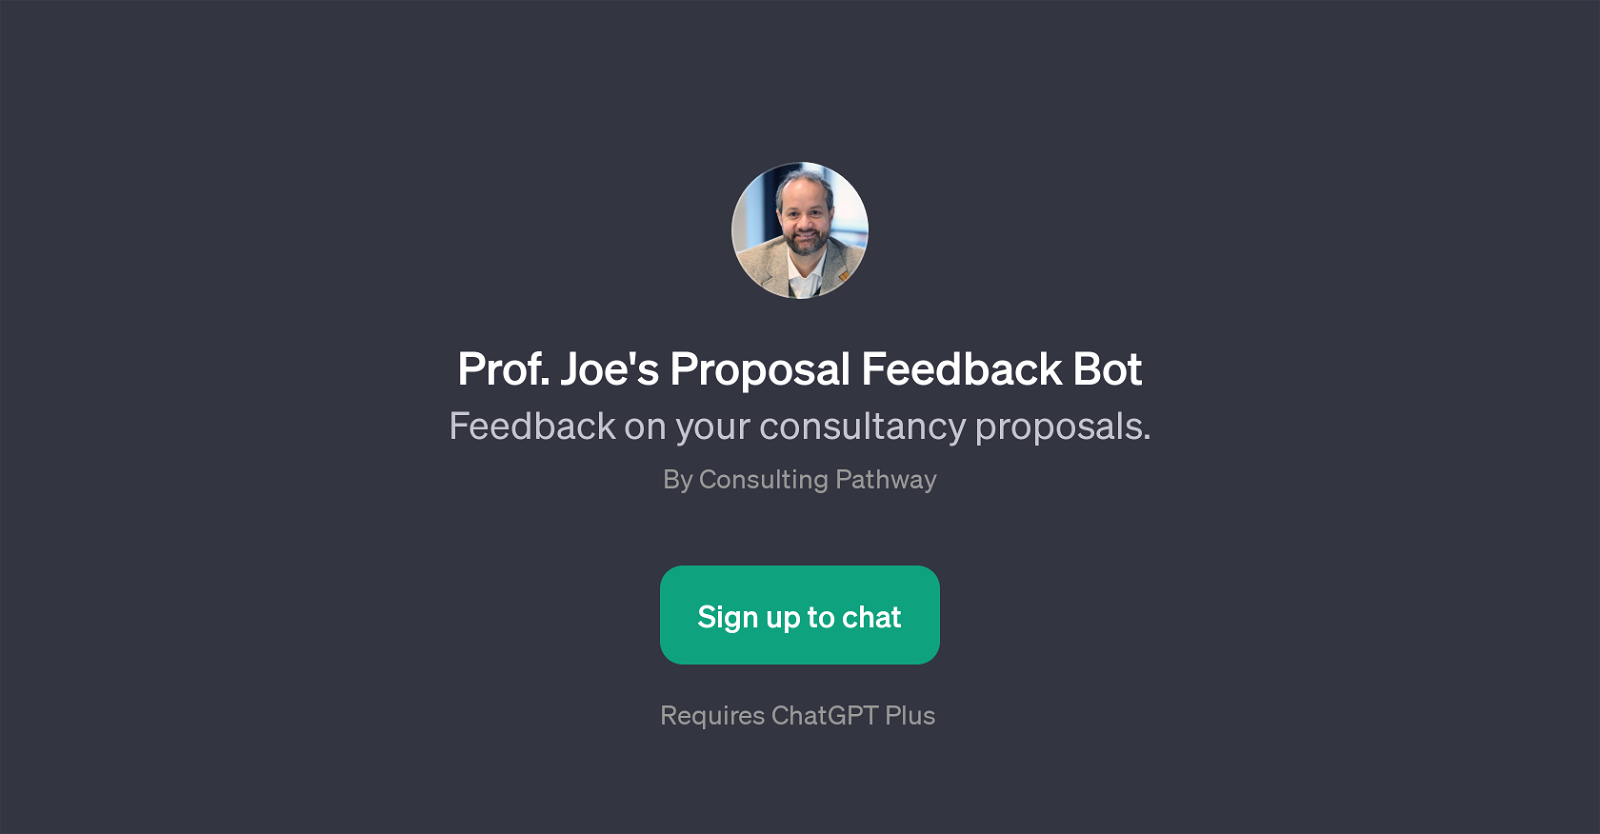 Prof. Joe's Proposal Feedback Bot website